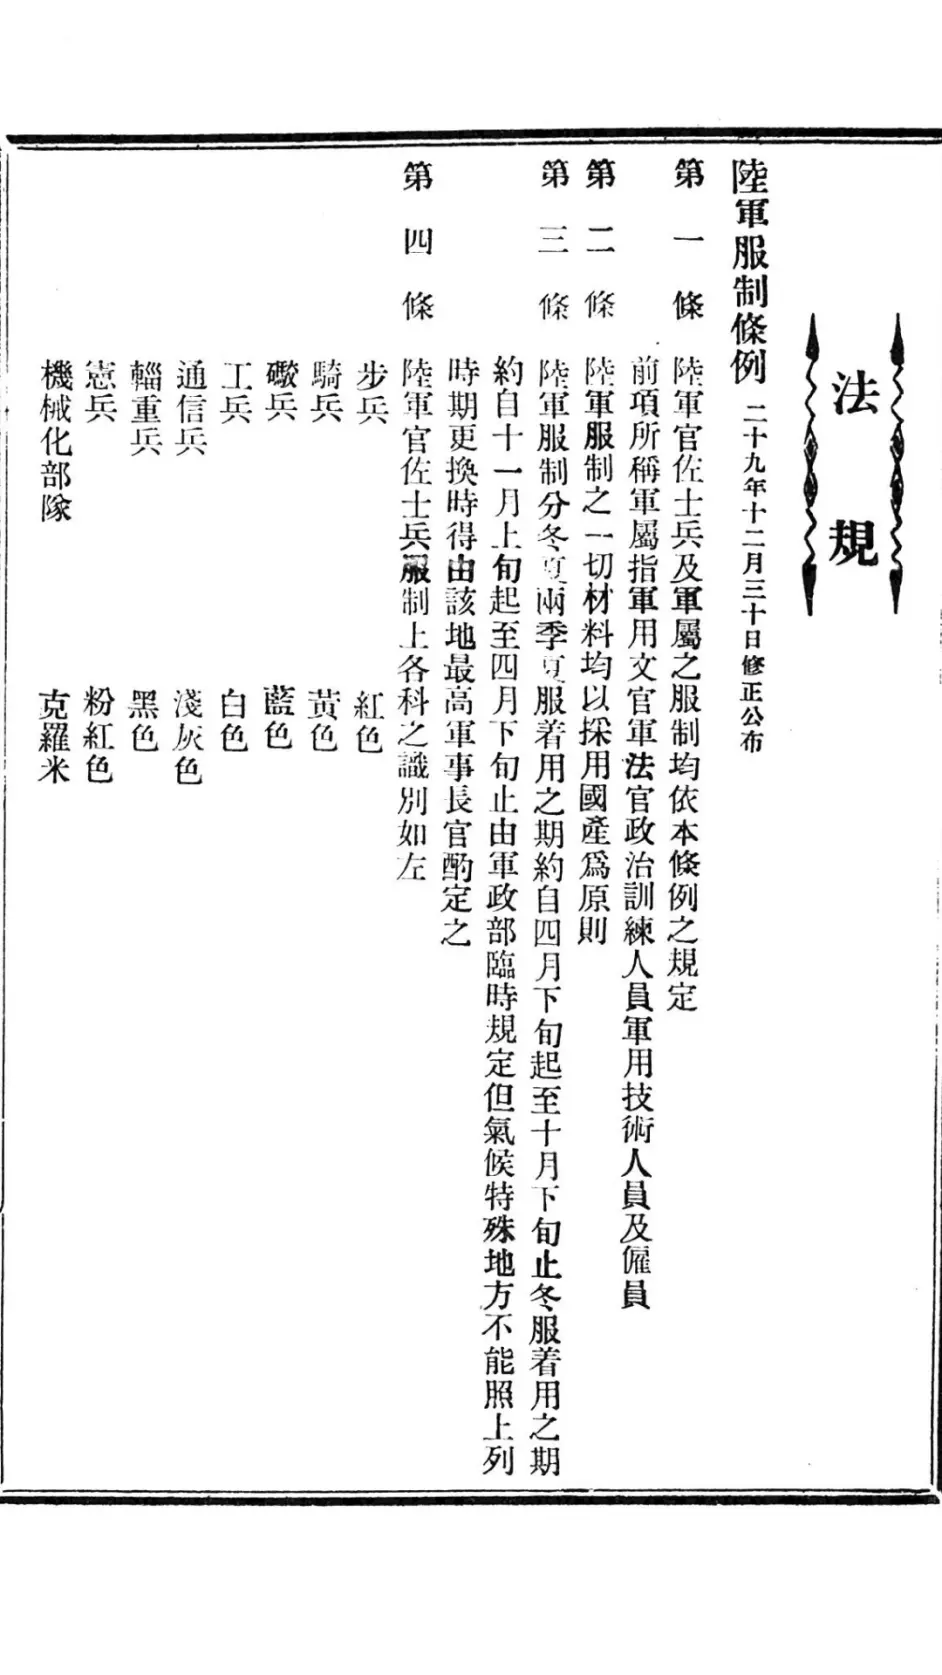 近代中国军事图集(1903-1949)——下篇(伪政权) - 哔哩哔哩